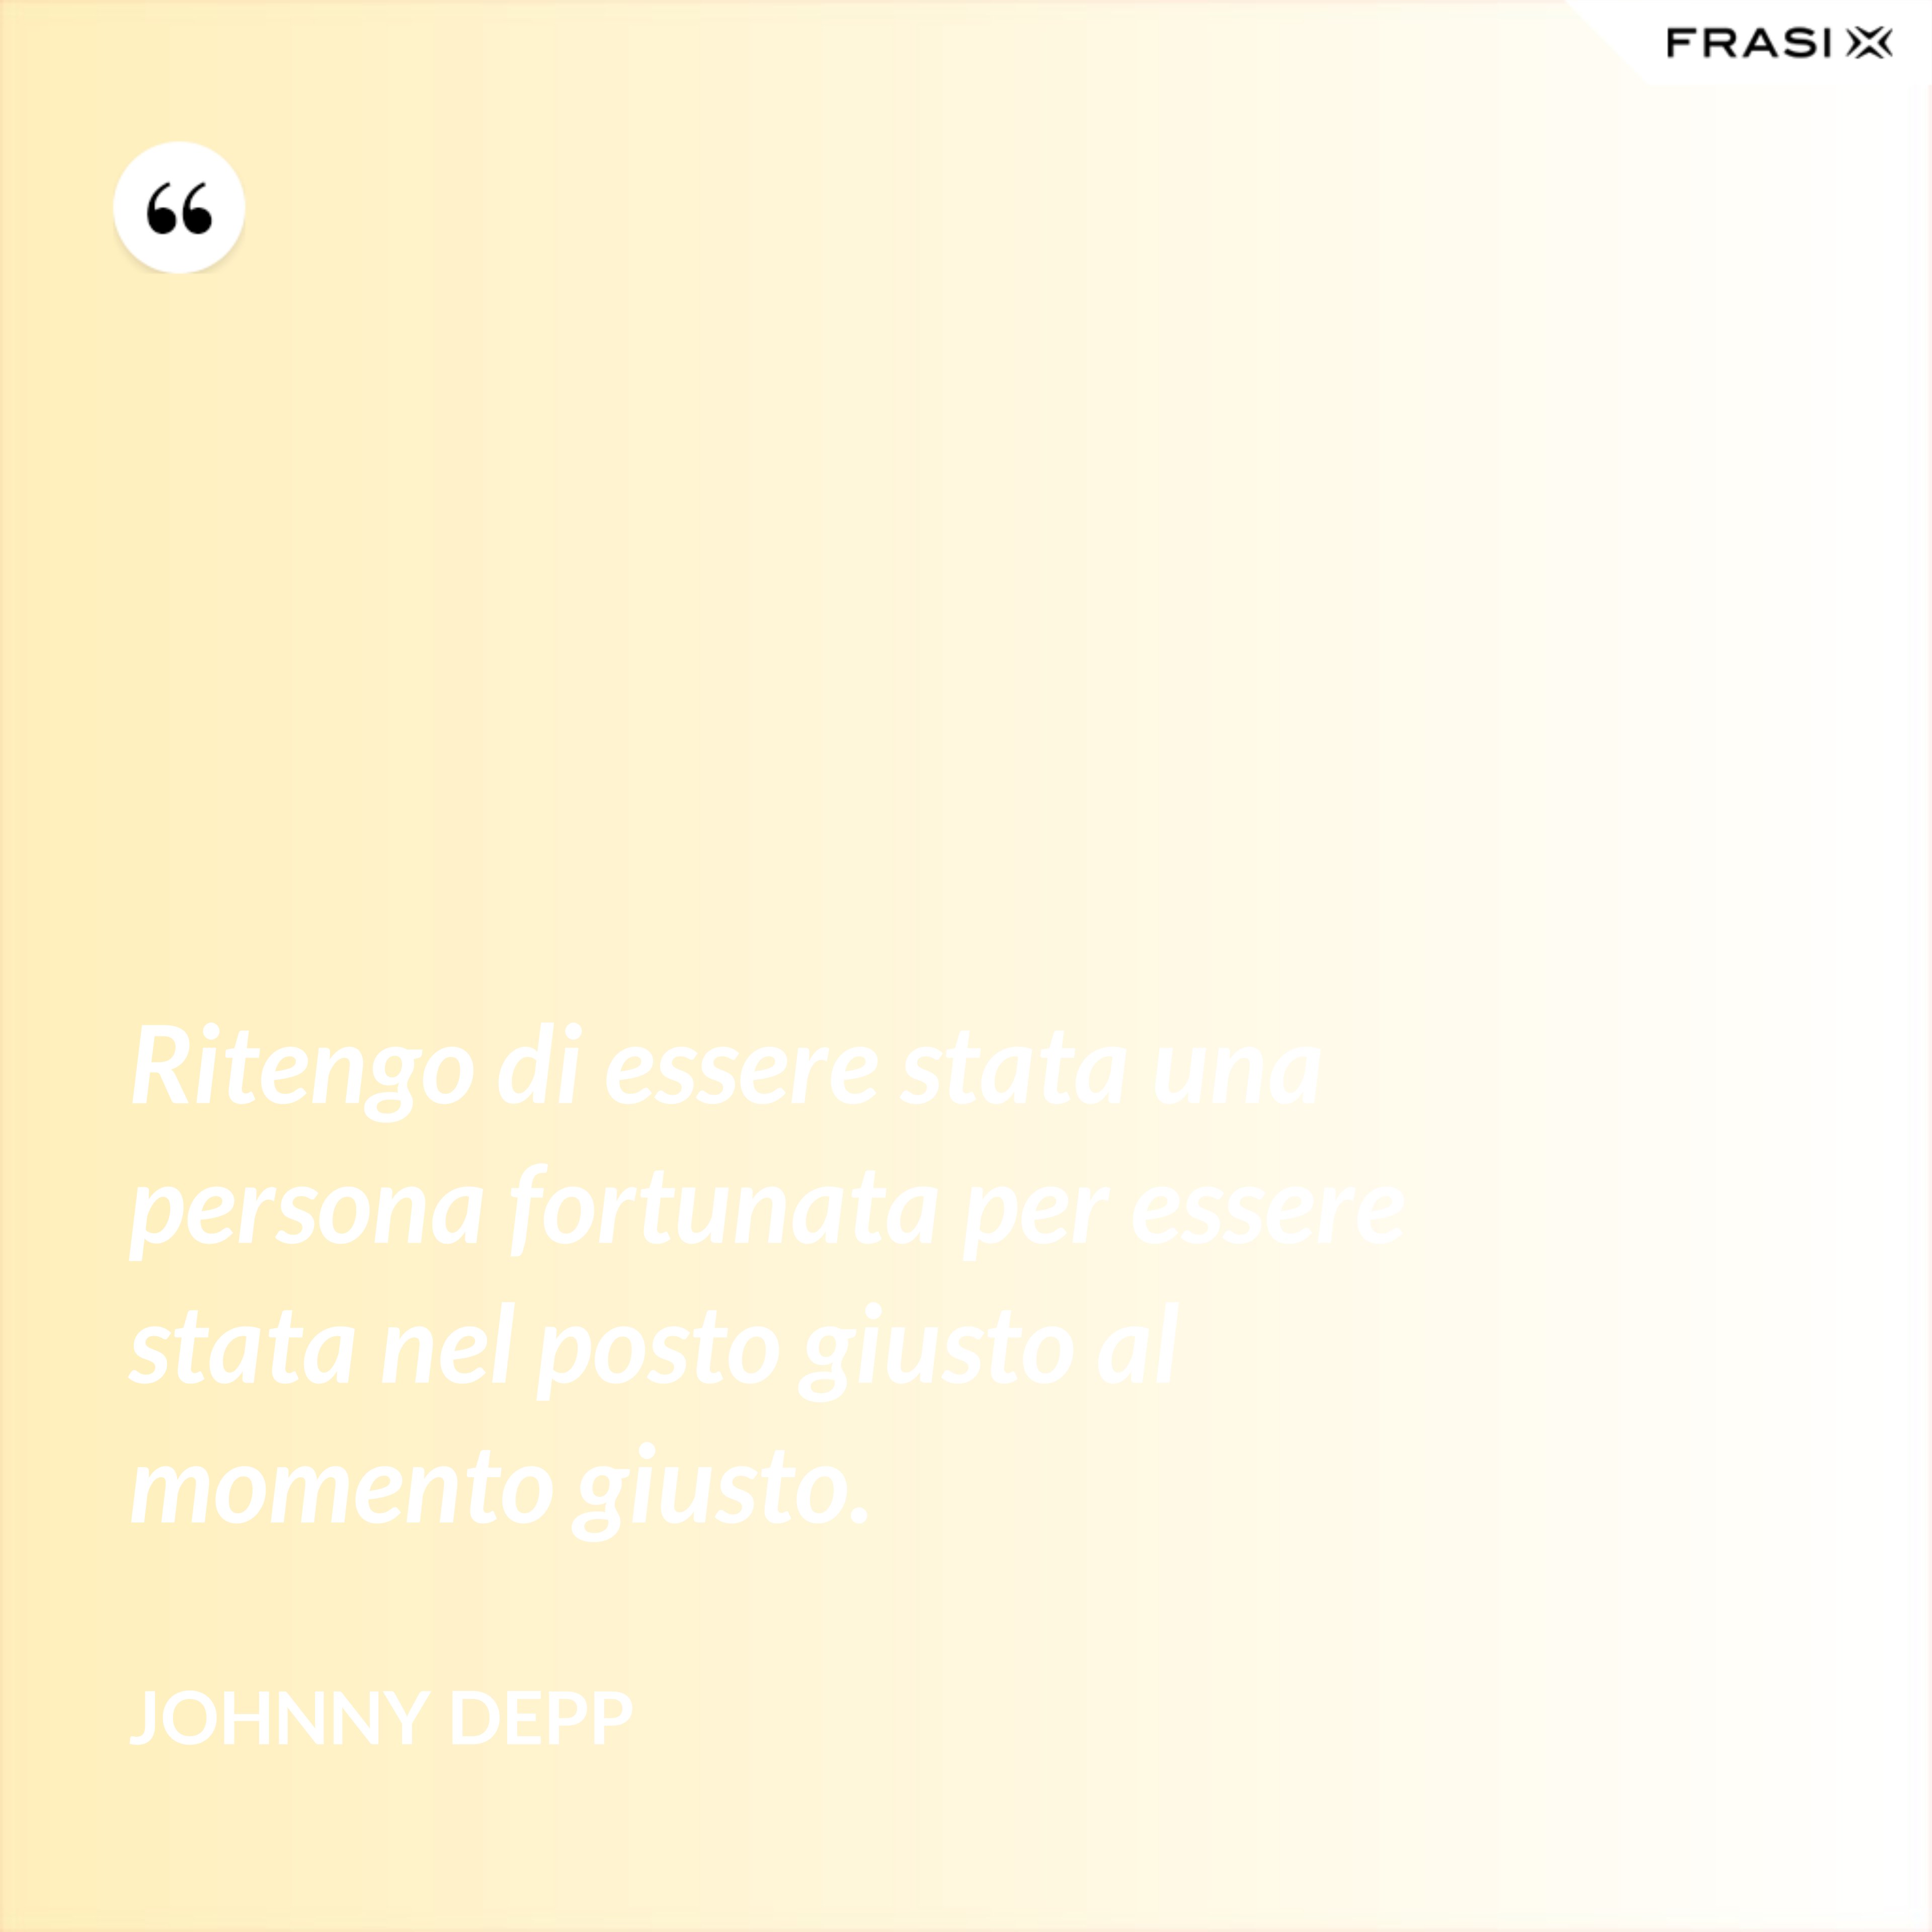 Ritengo di essere stata una persona fortunata per essere stata nel posto giusto al momento giusto. - Johnny Depp